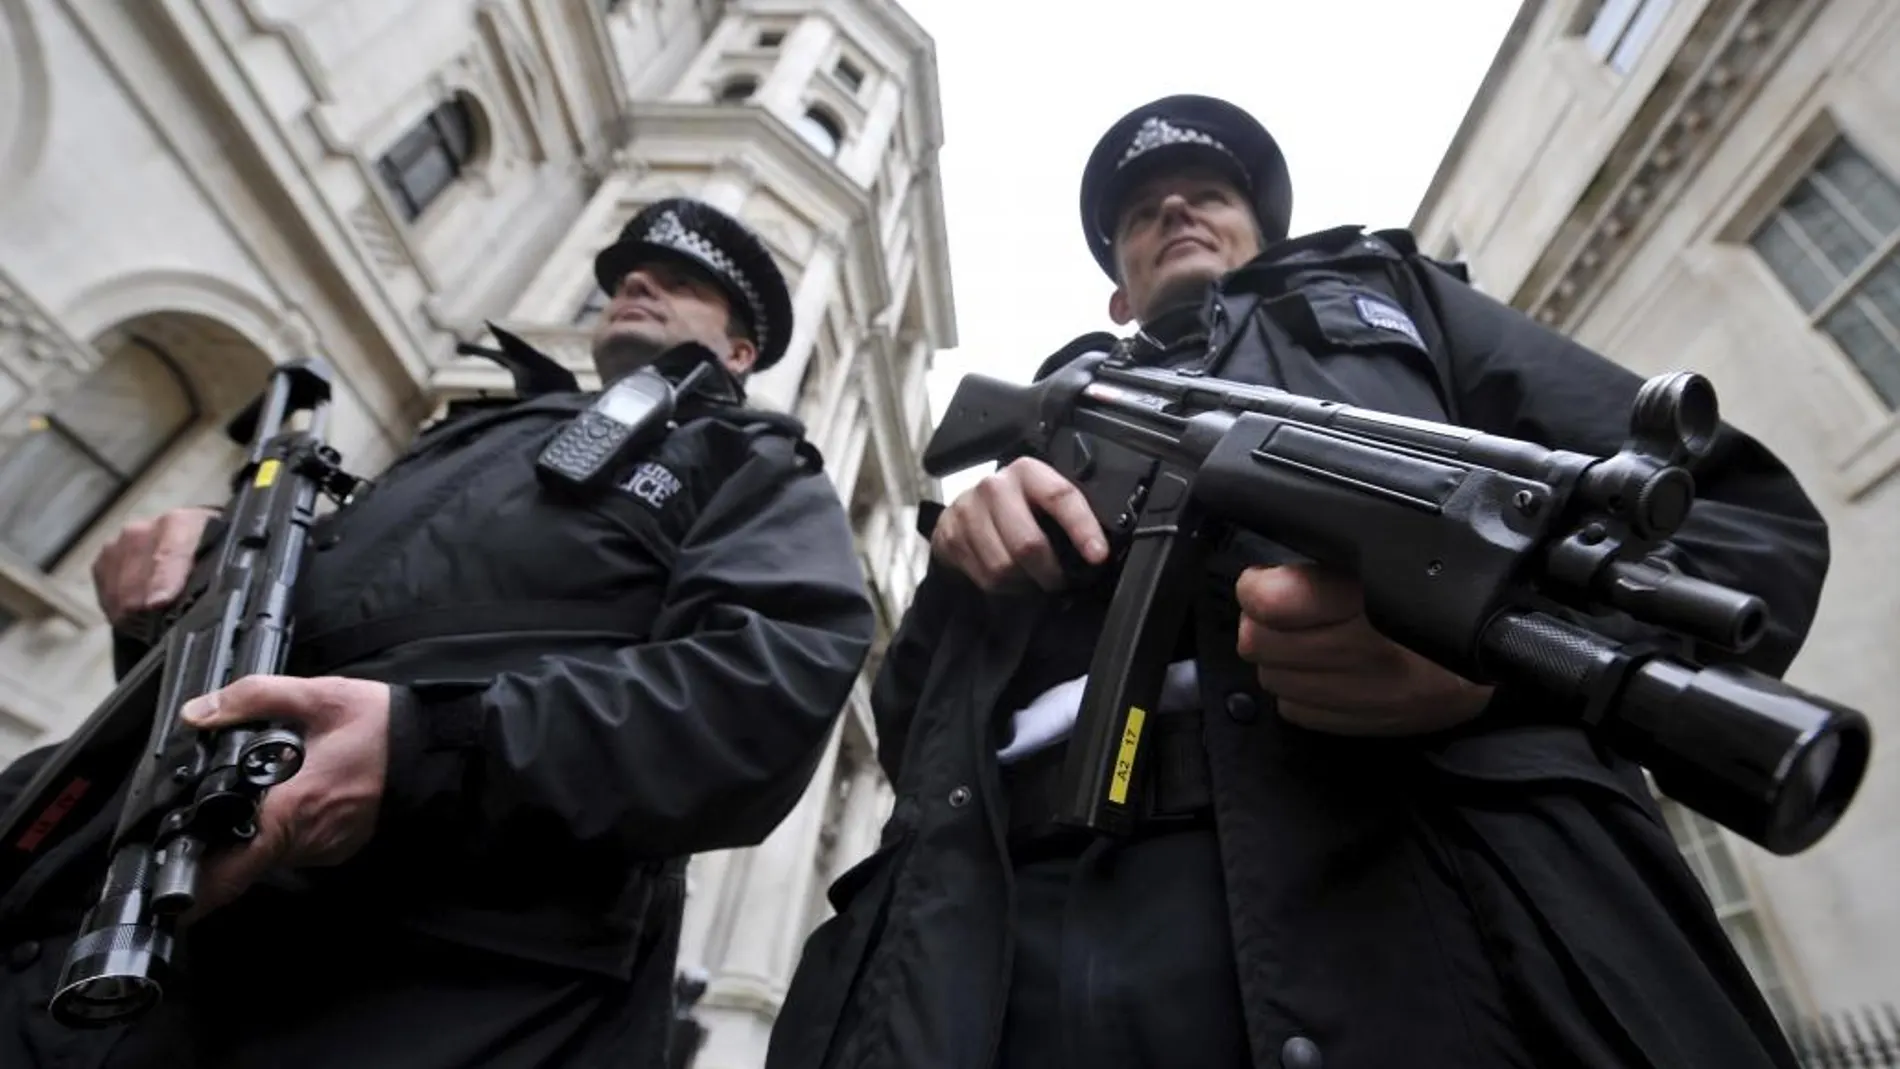 Dos agentes de policía armados patrullan una calle del centro de Londres, en una imagen de archivo